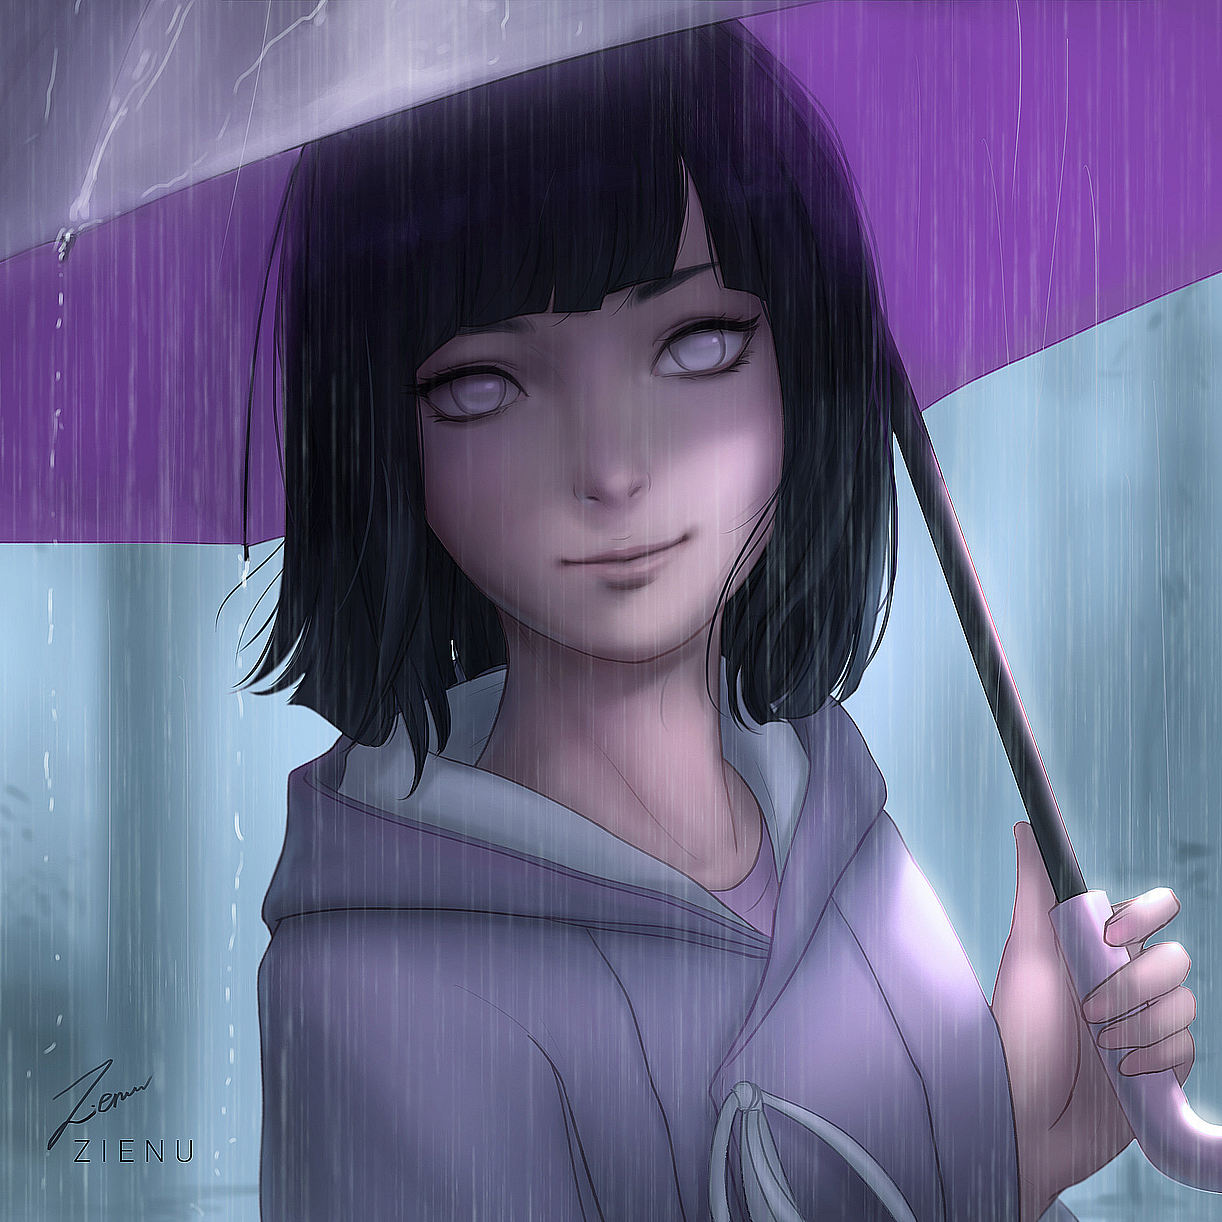 Hinata Hyuga in the rain: picture: Naruto (Artist: Zienu)